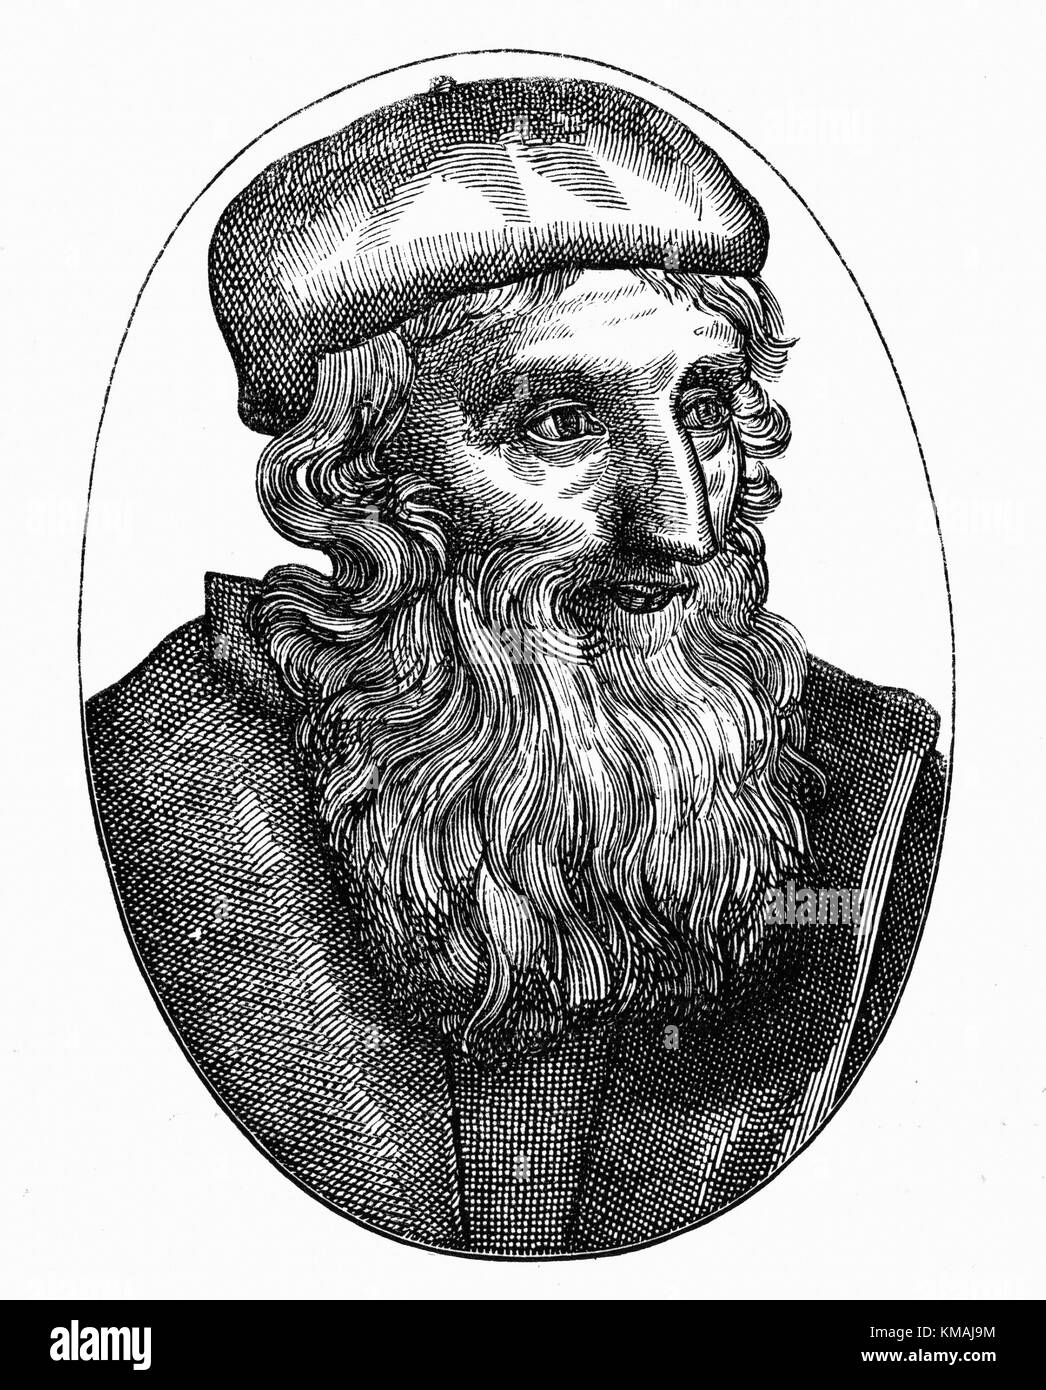 John Wycliffe - reformador religioso inglés, precursor de la Reforma Protestante. Xilografía del siglo XVI. Foto de stock